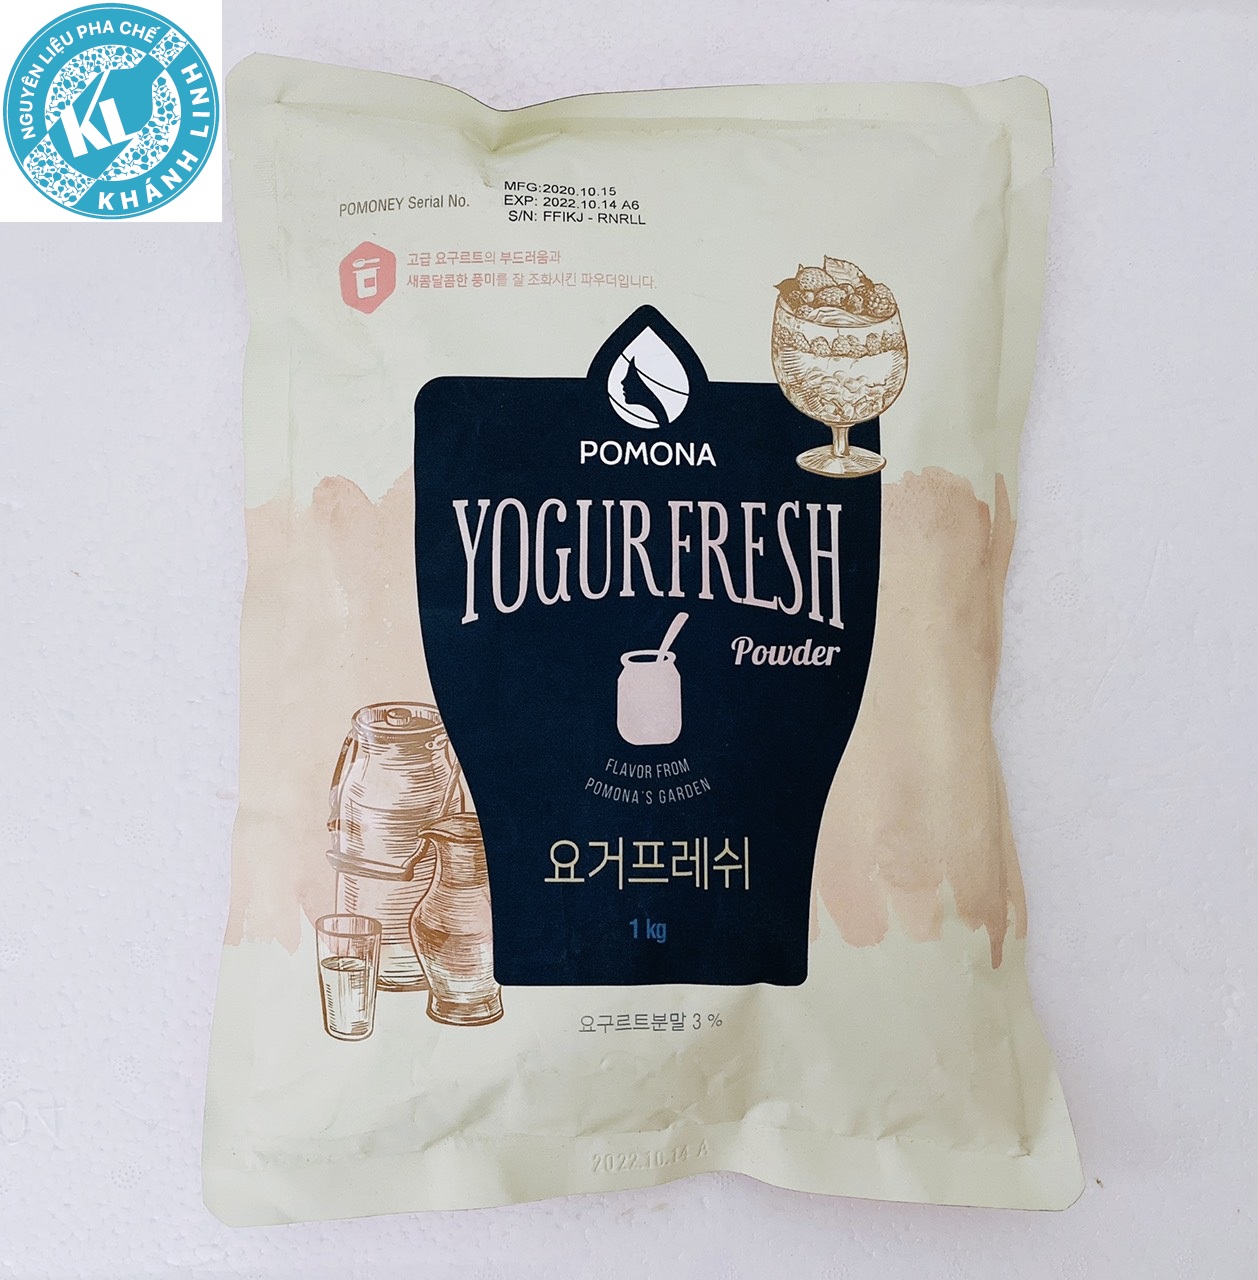 bột yogurfresh power pomona Hàn quốc